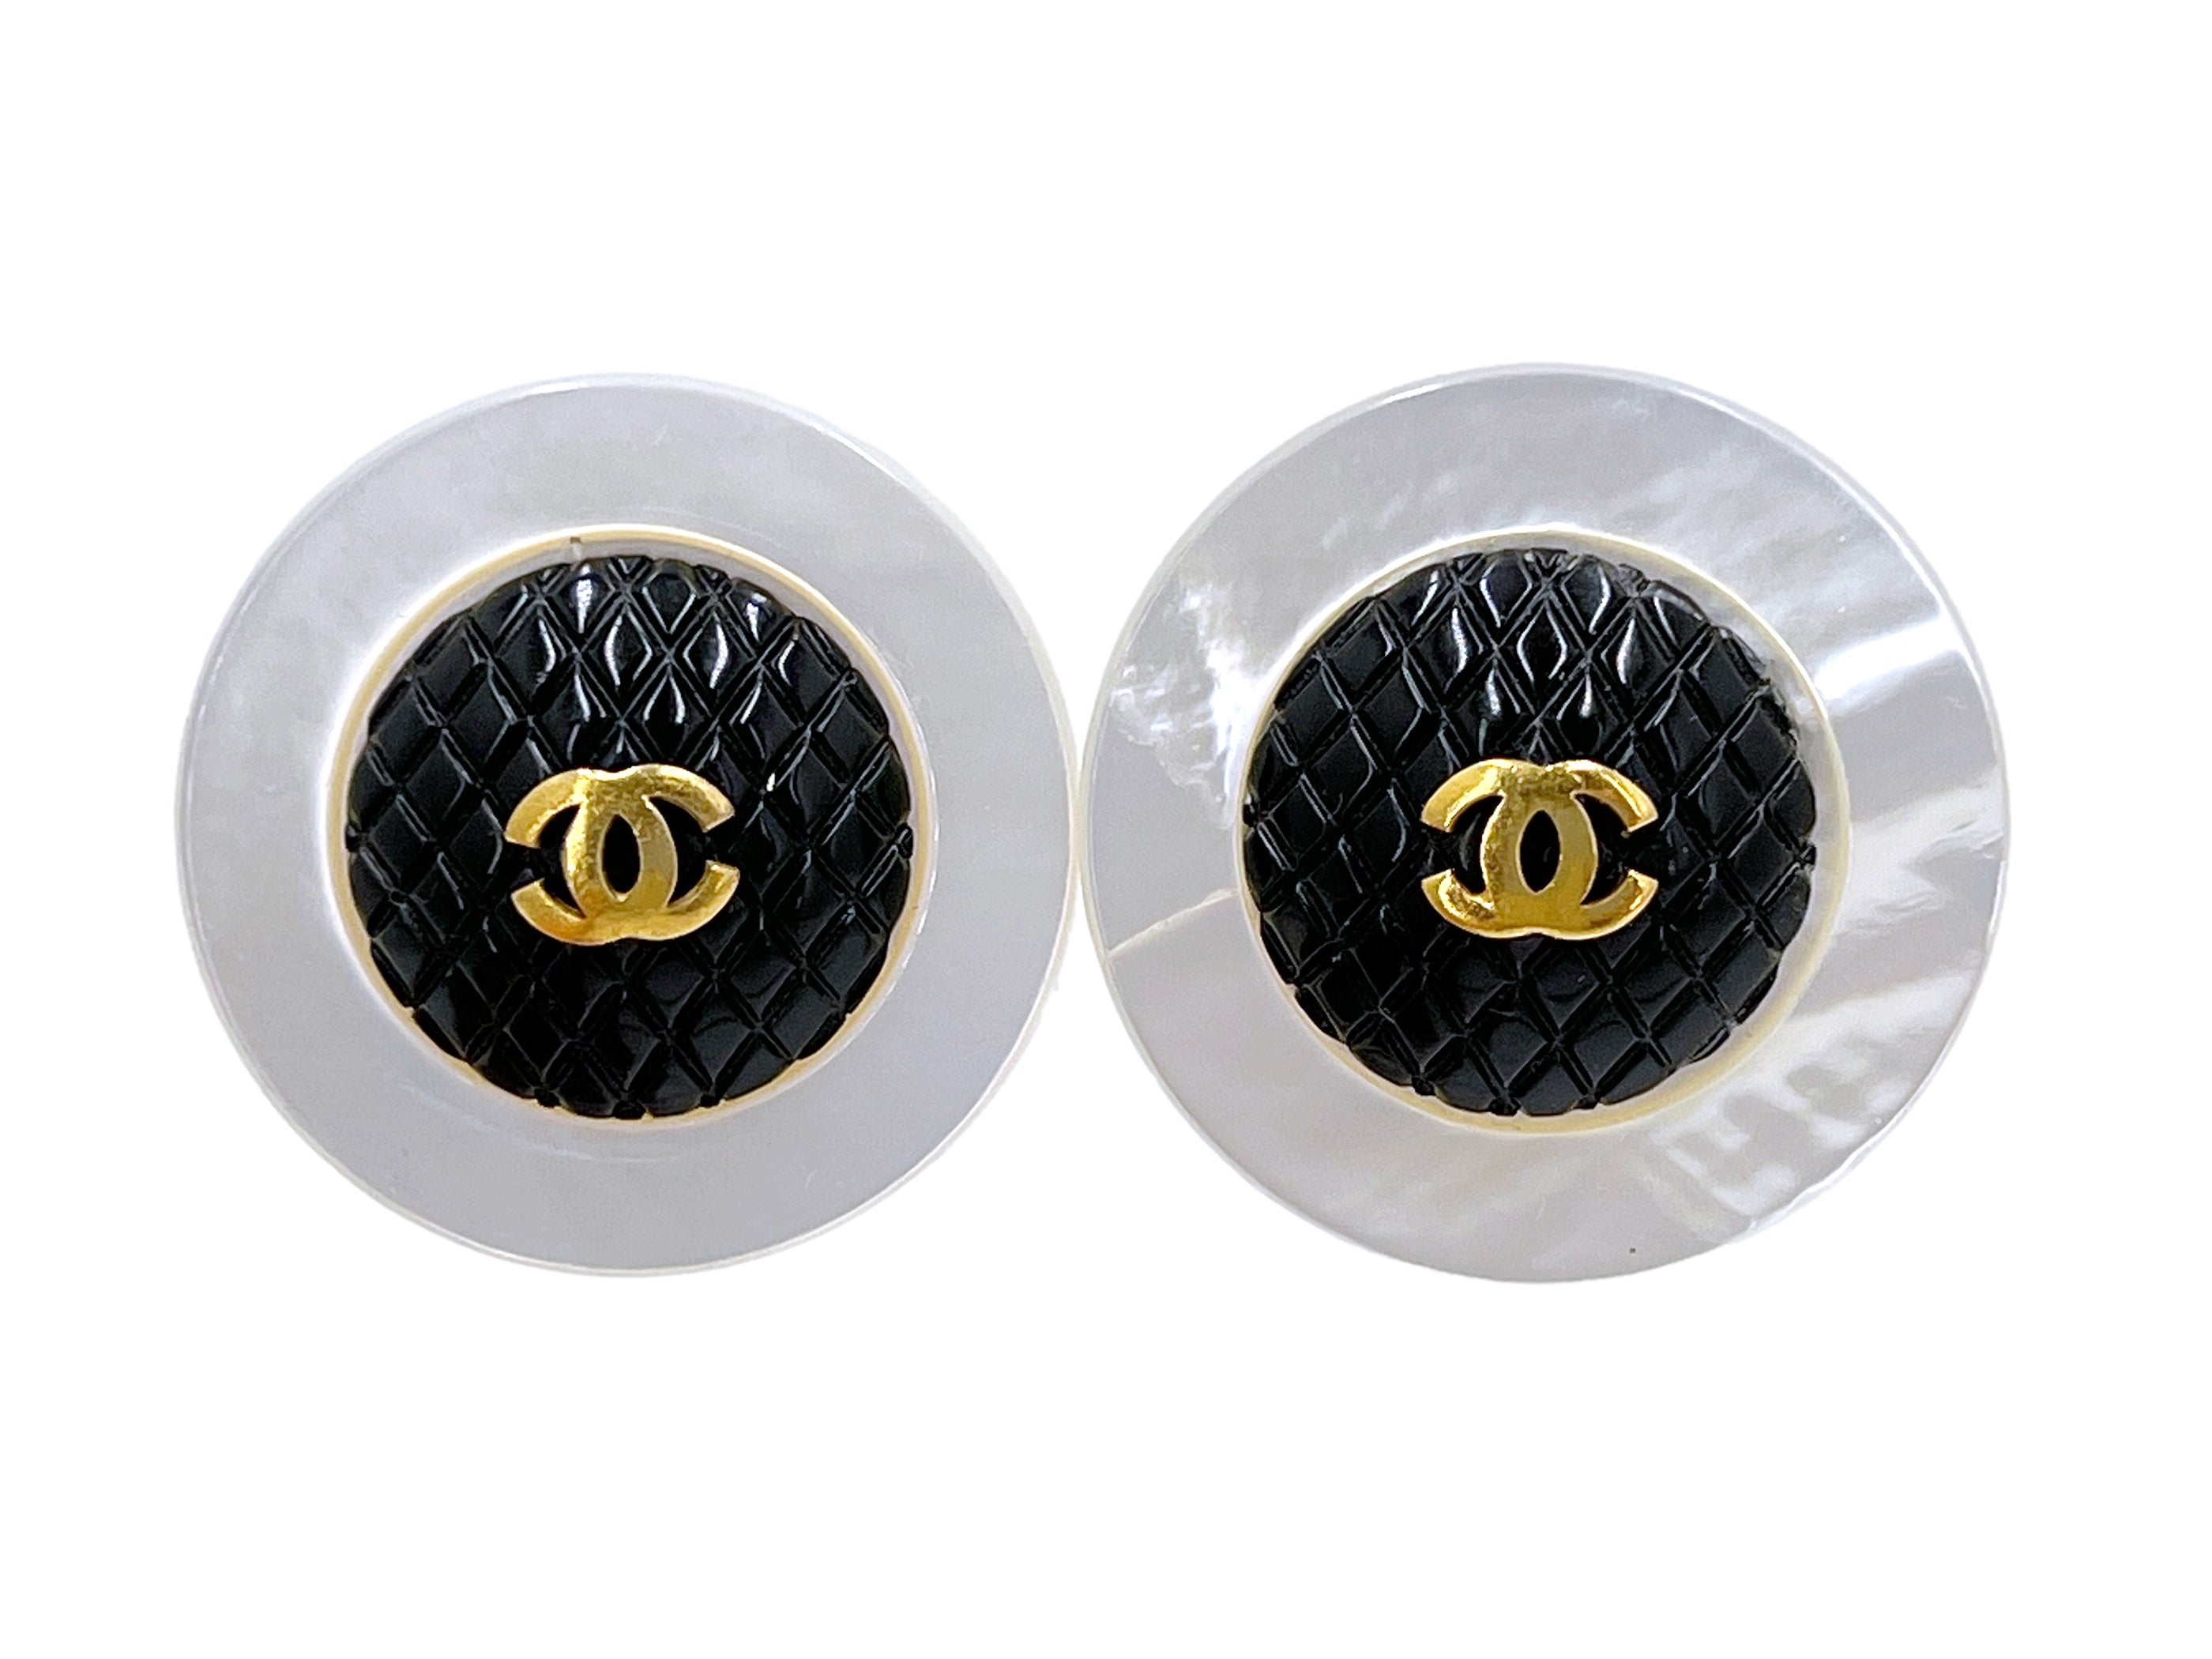 Chanel Black Velvet Cc Round Earrings